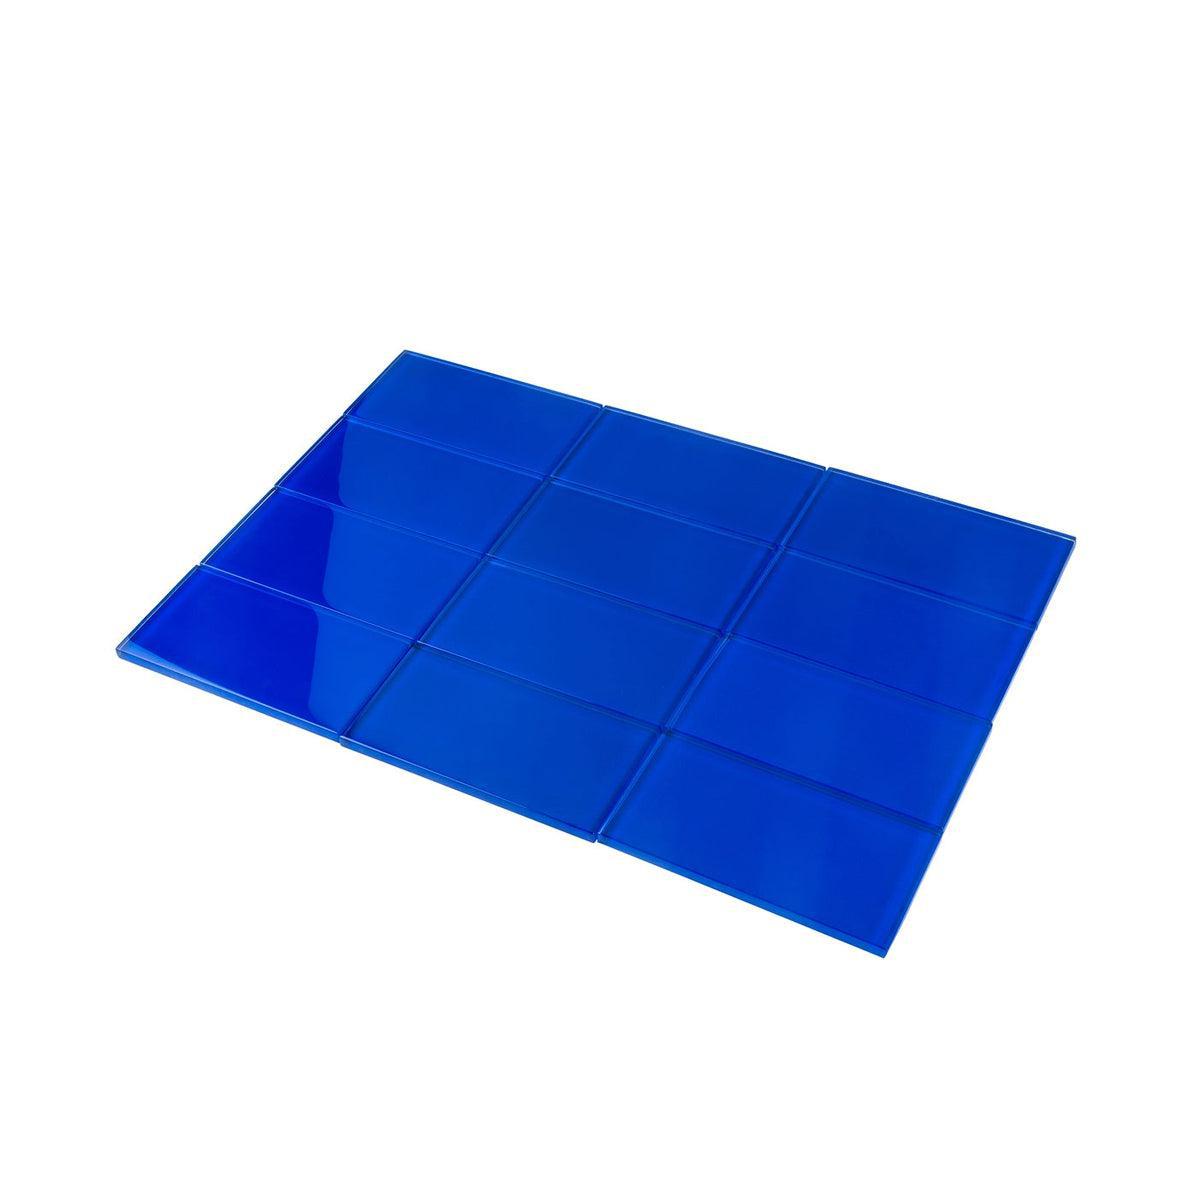 Glacier Cobalt Blue 3X6 Polished Glass Subway Tile